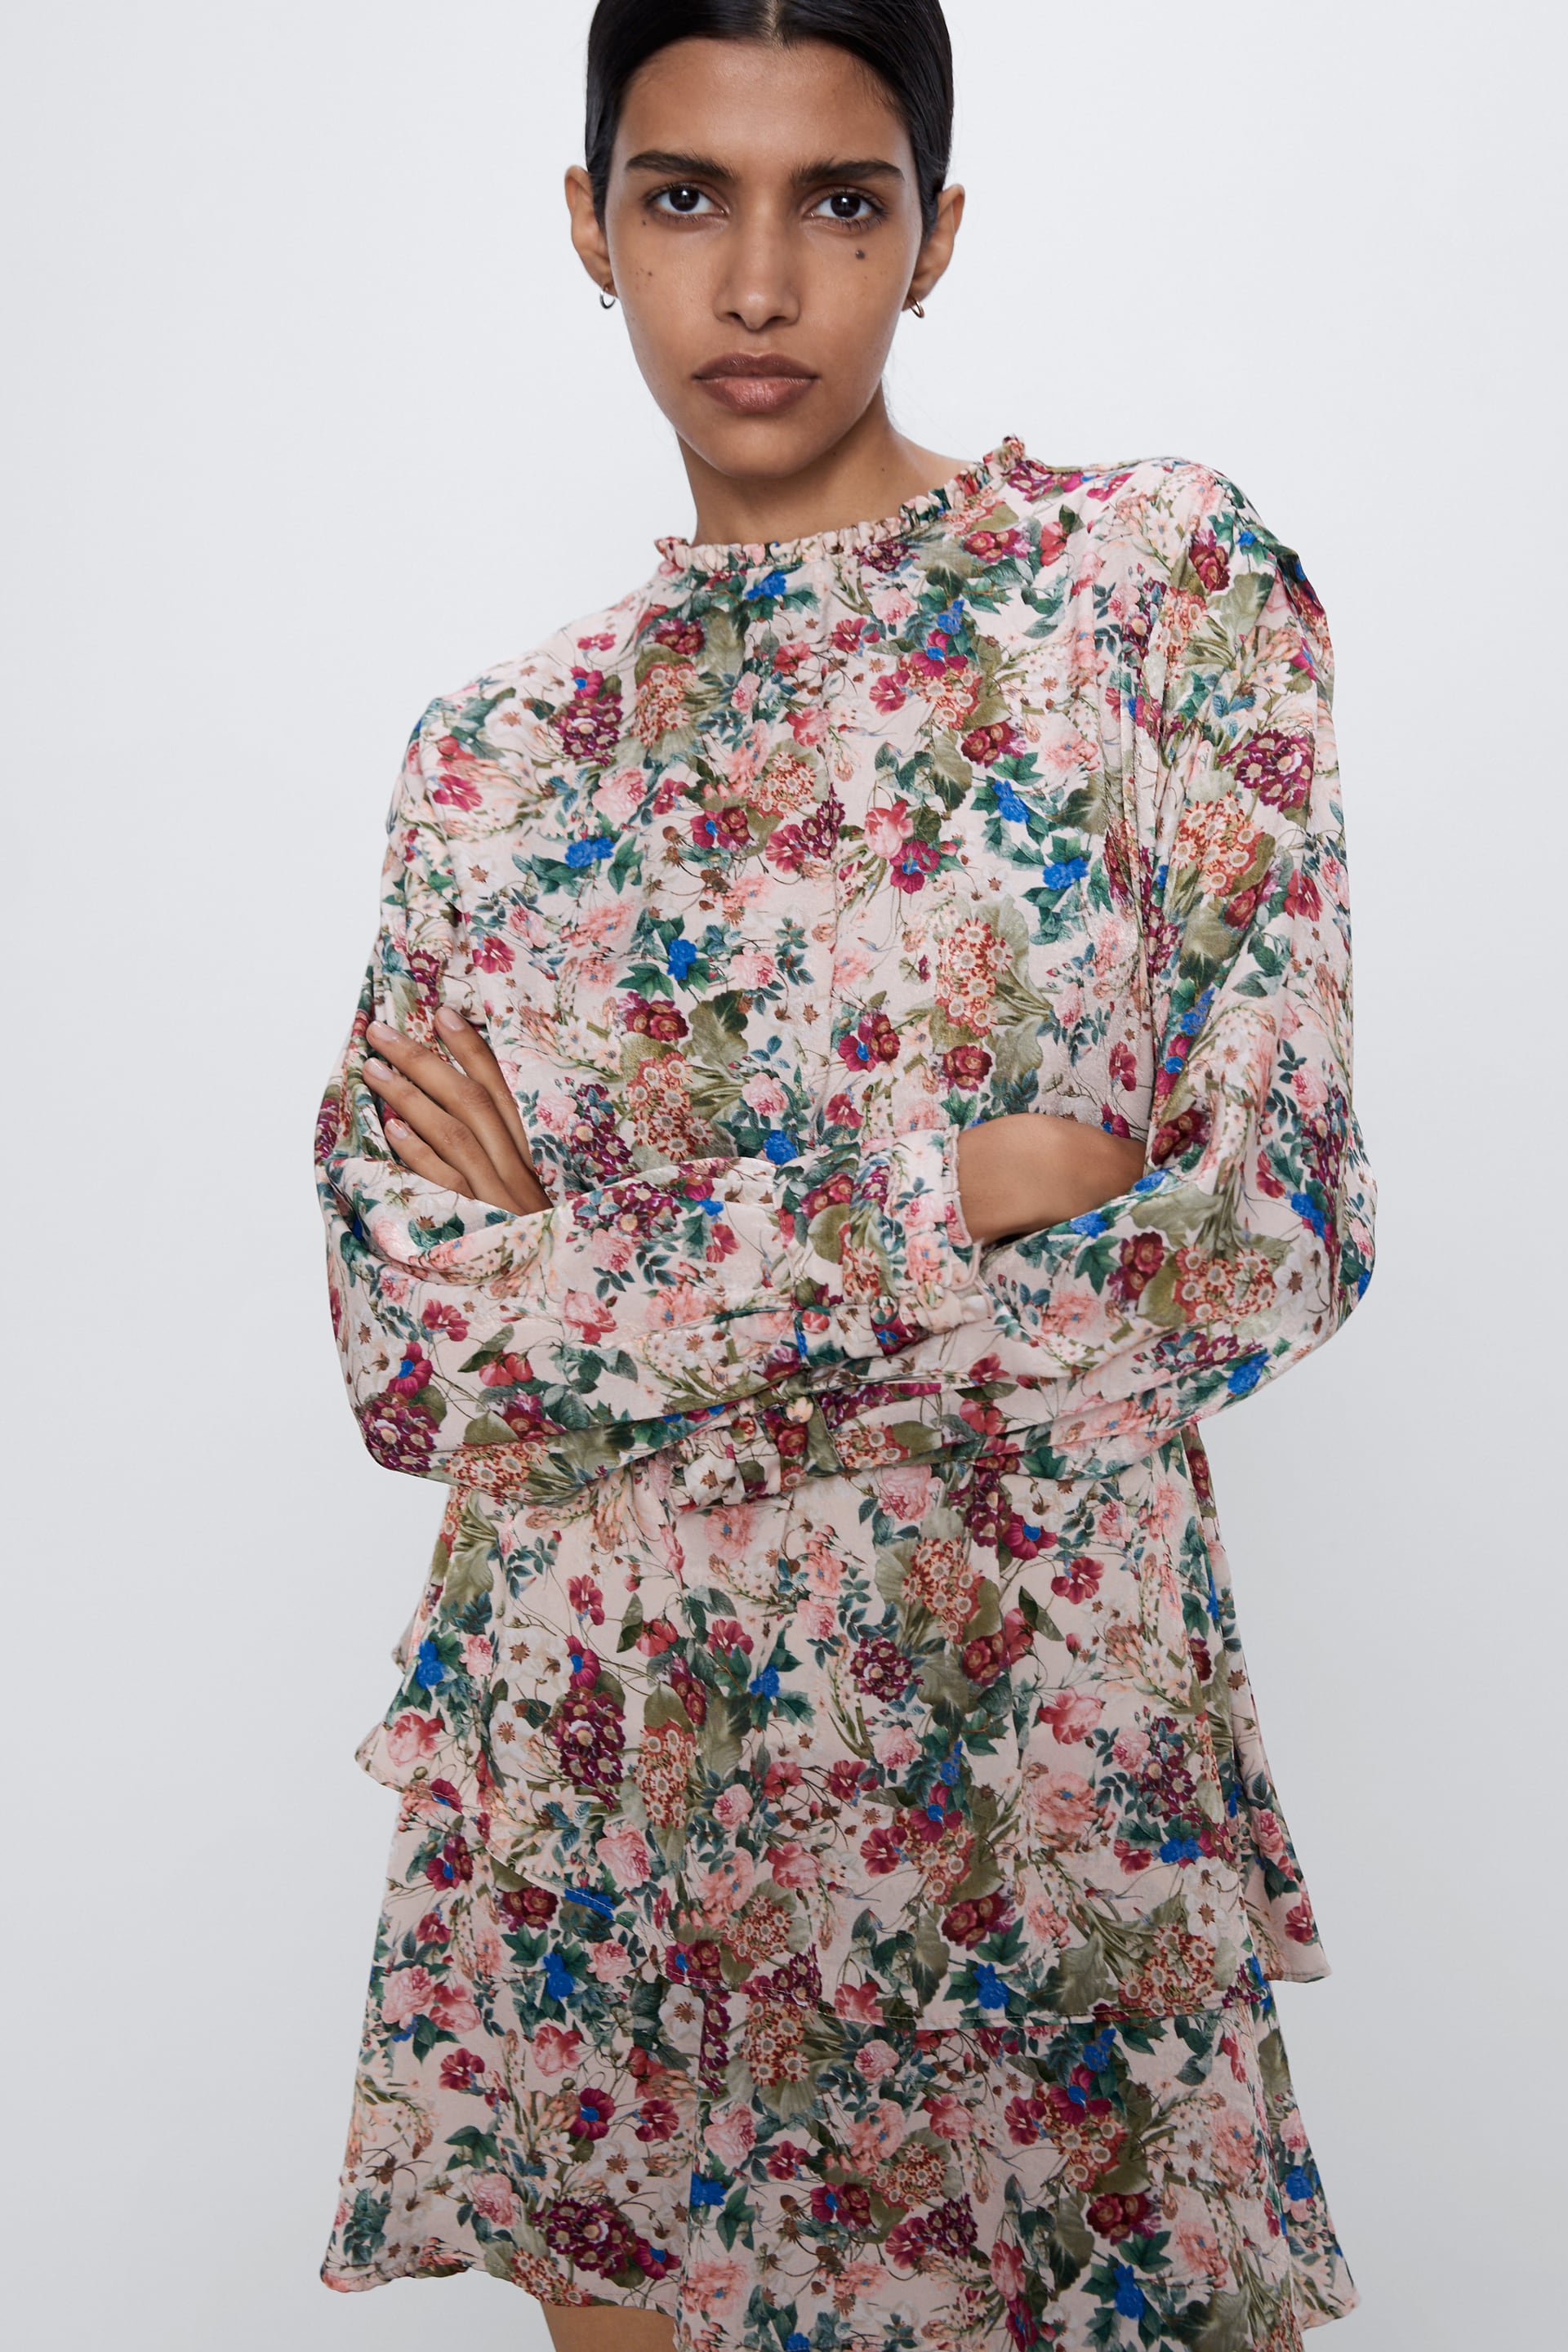 L'abito a fiori di Zara (amato dalle influencer) da indossare in primavera  – Dressing and Toppings